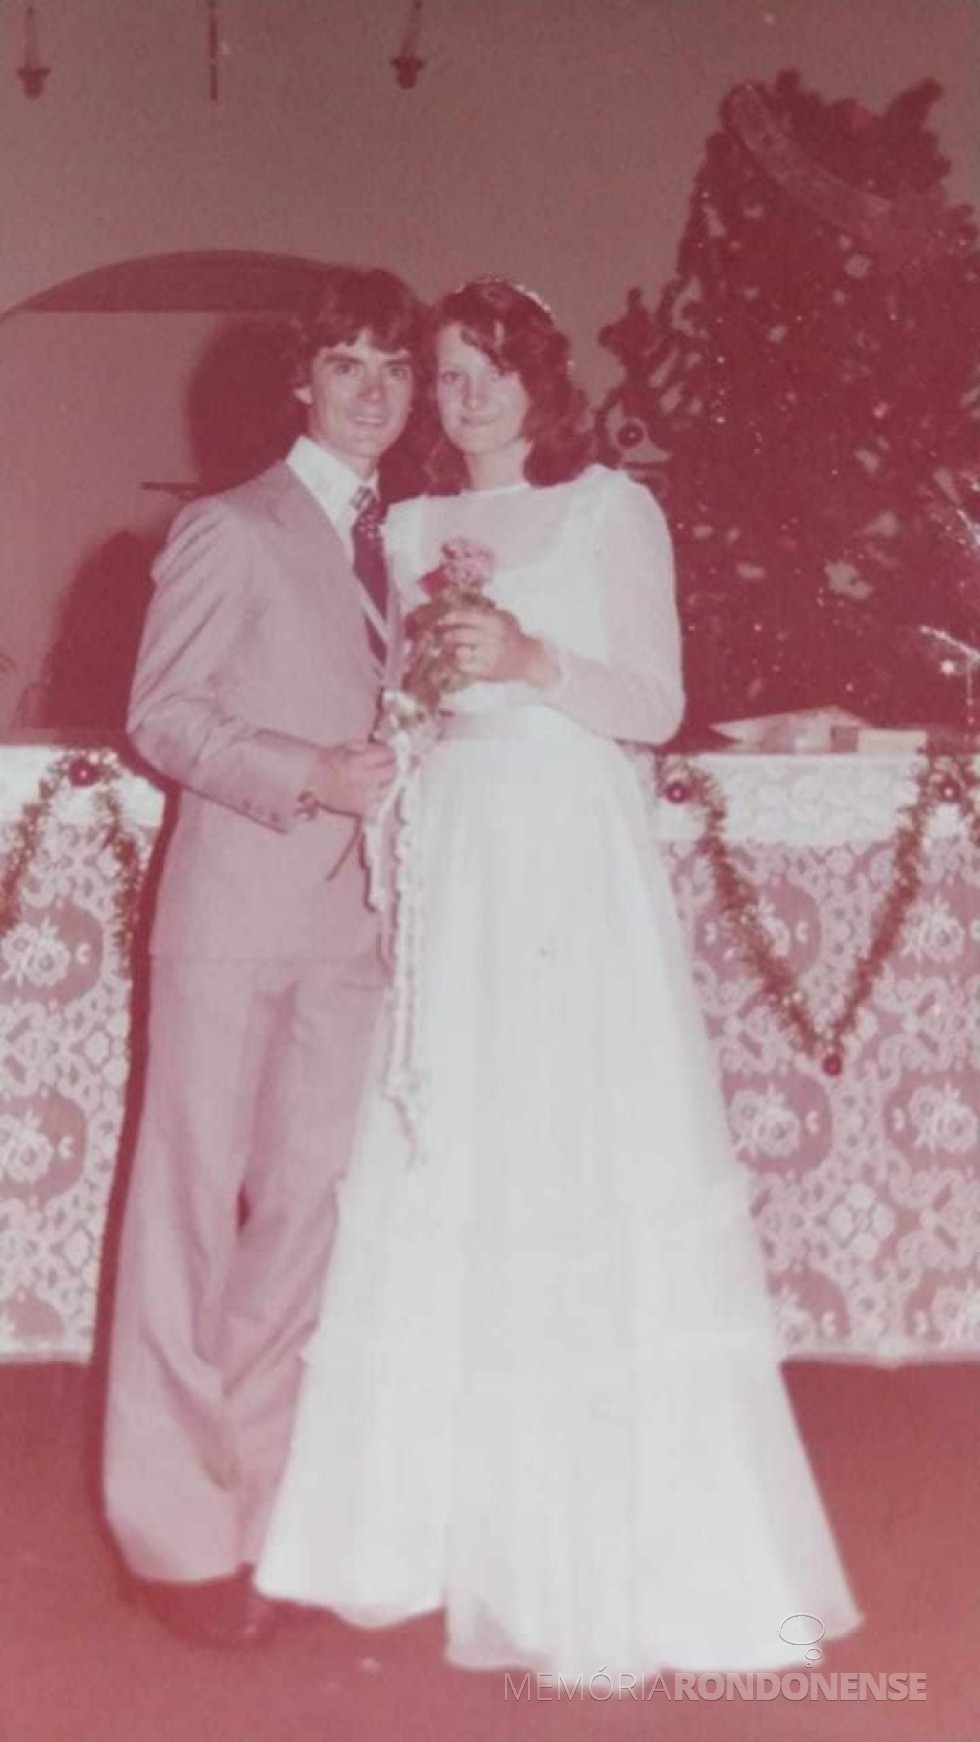 || Jovens rondonenses Marília Casarotto e Luciano Aluísio Rempel que se casaram em janeiro de 1981.
Imagem: Acervo de Lidiane Csarotto Kotz - FOTO 6 - 